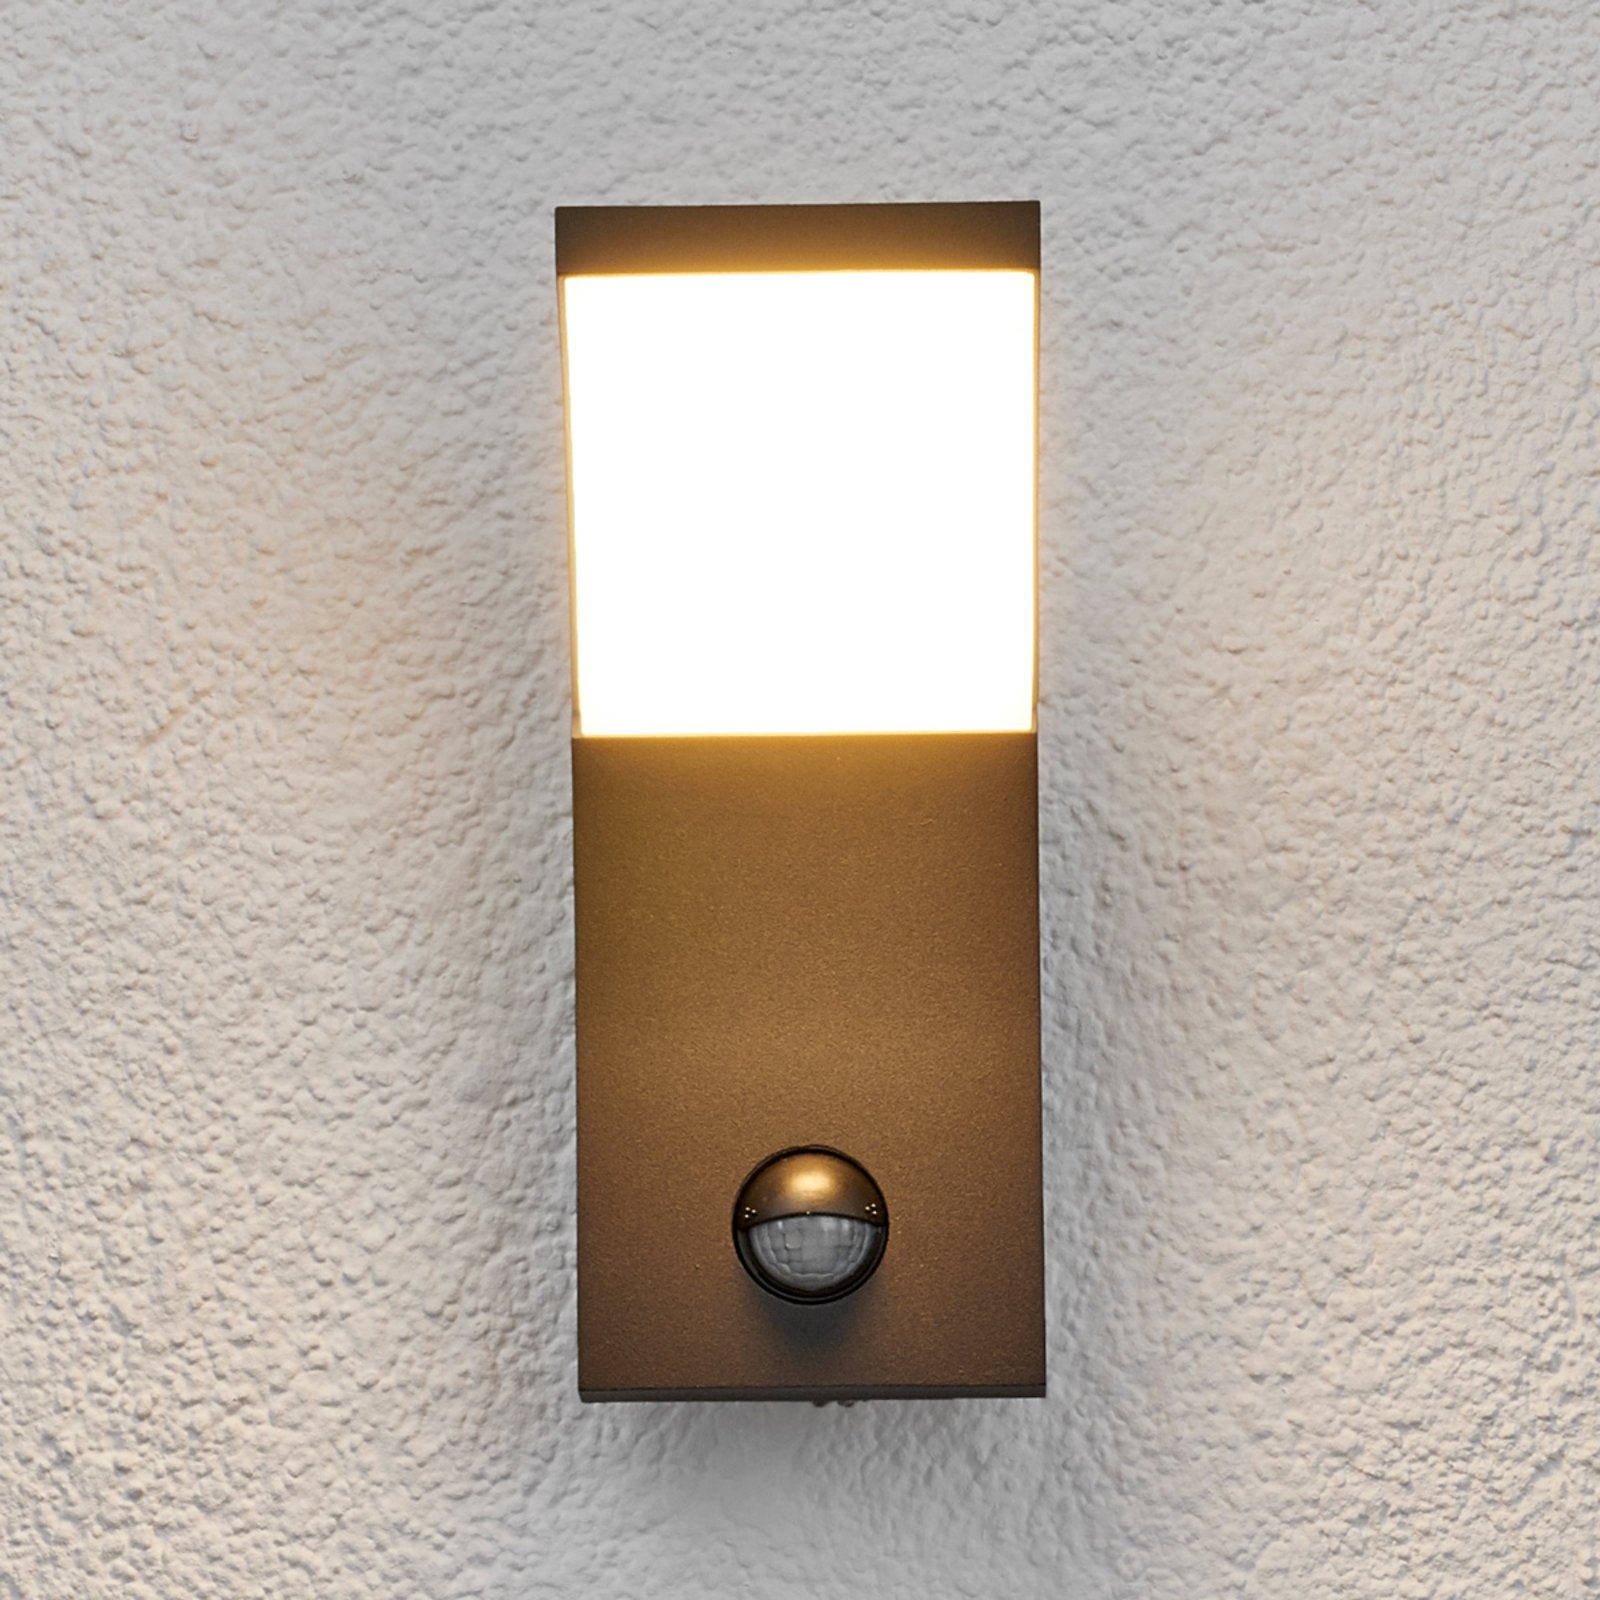 LED-Außenwandleuchte Timm Außenwandlampe Bewegungsmelder Grafitgrau Lampenwelt